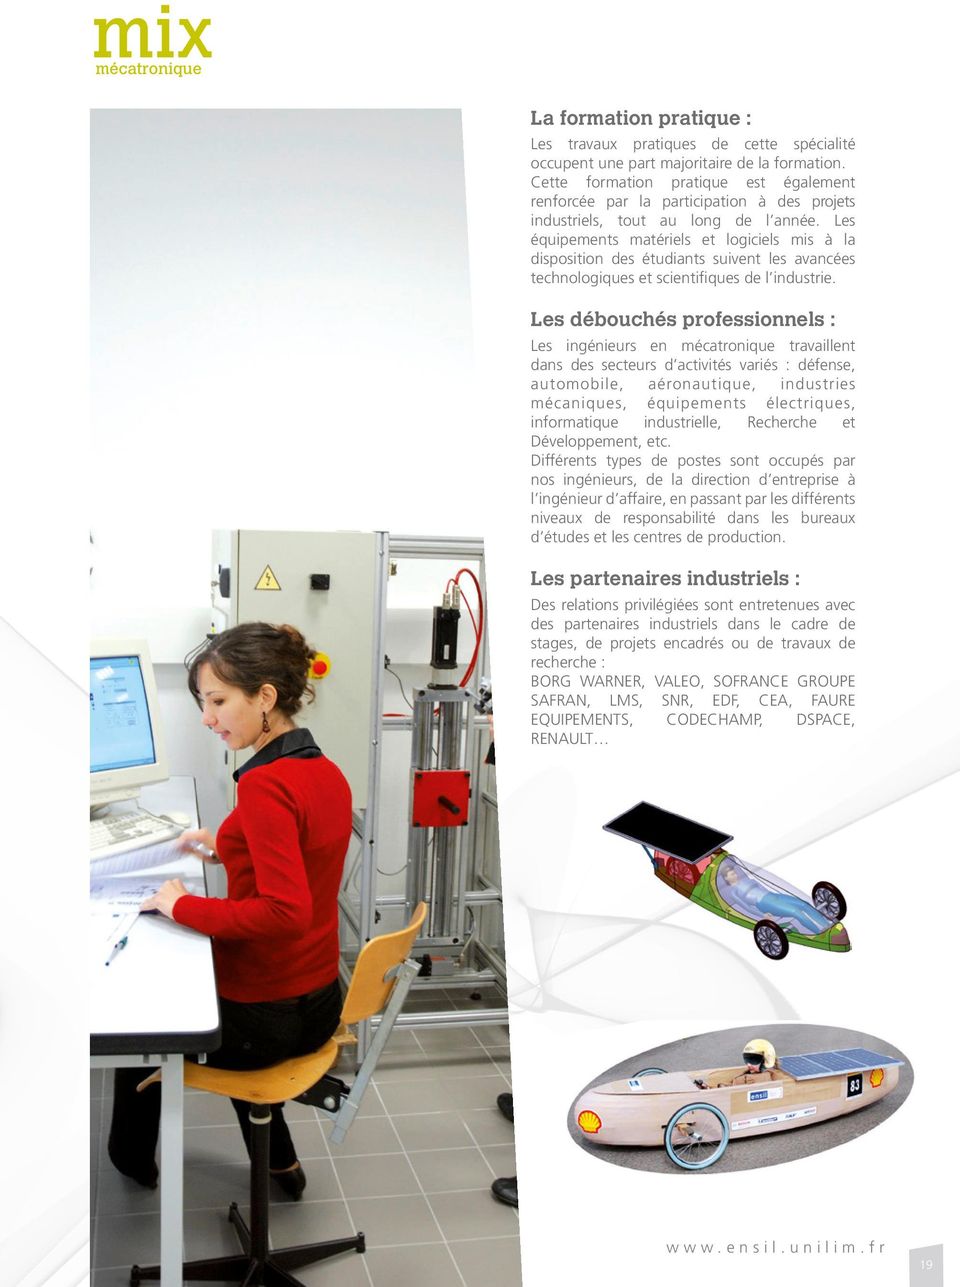 Les équipements matériels et logiciels mis à la disposition des étudiants suivent les avancées technologiques et scientifiques de l industrie.